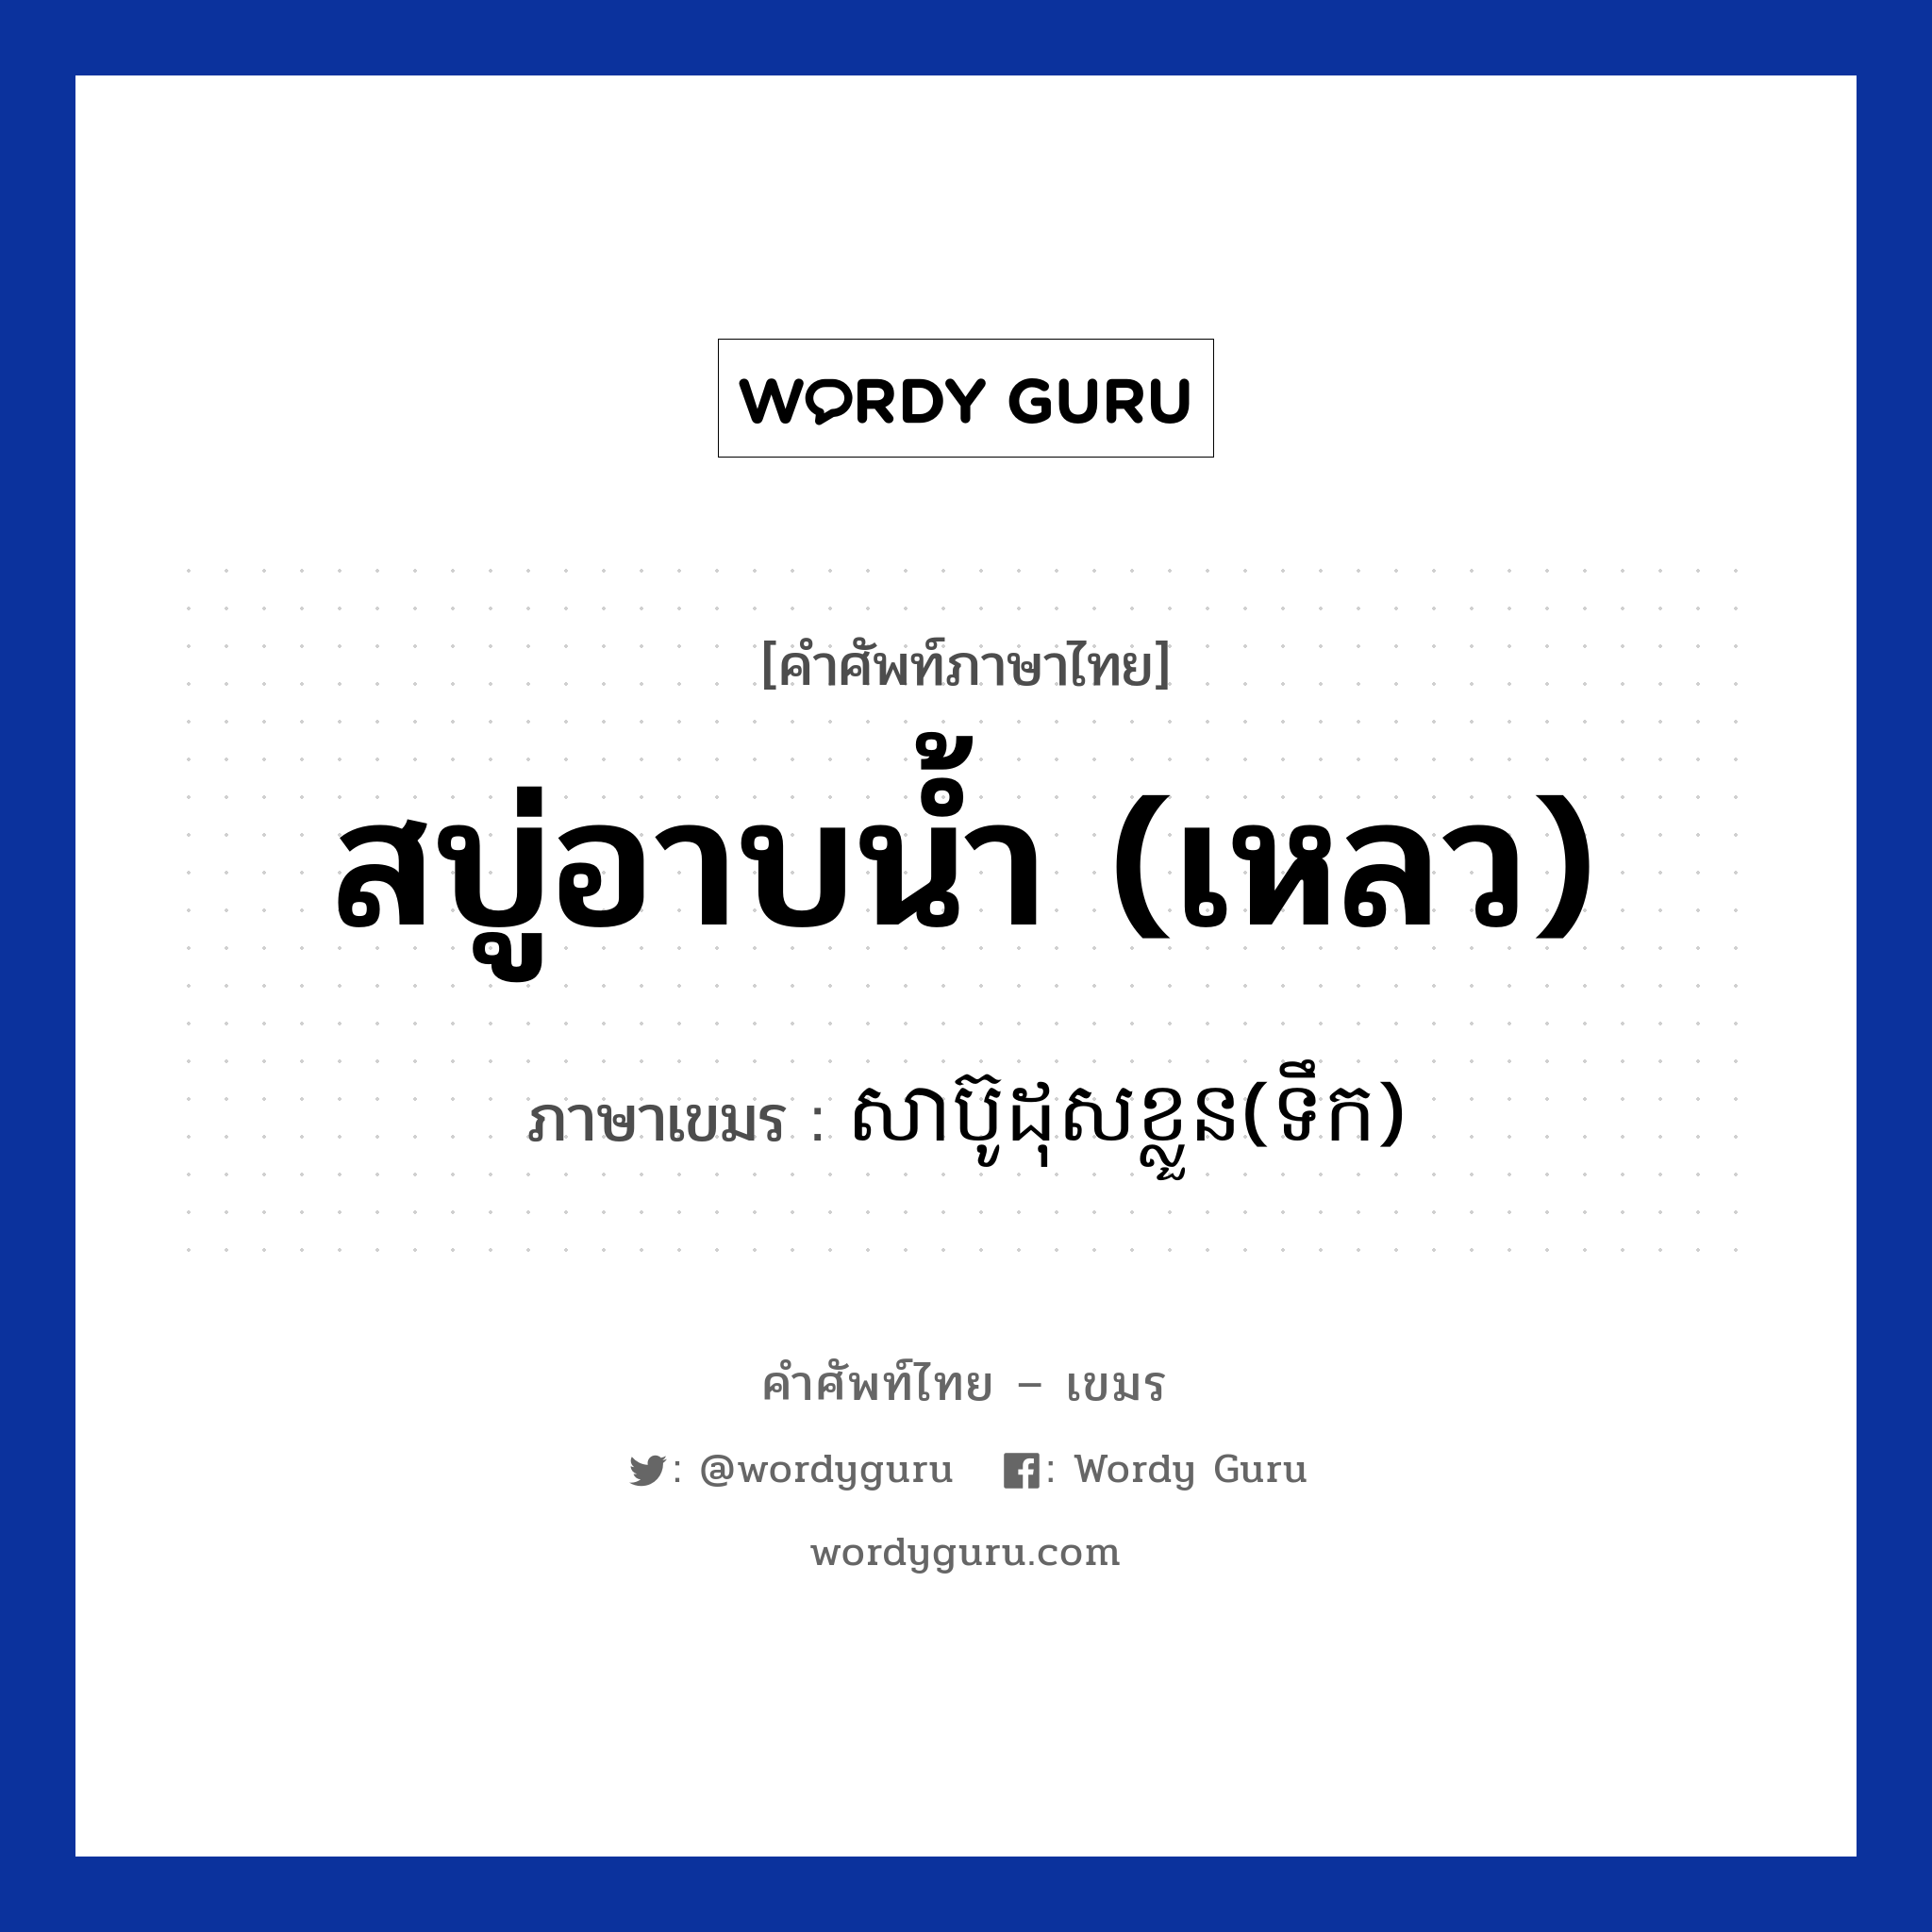 សាប៊ូដុសខ្លួន(ទឹក) ภาษาไทย?, คำศัพท์ภาษาไทย - เขมร សាប៊ូដុសខ្លួន(ទឹក) ภาษาเขมร สบู่อาบน้ำ (เหลว) หมวด สิ่งอำนวยความสะดวก Sabudoskloun(teok) หมวด สิ่งอำนวยความสะดวก